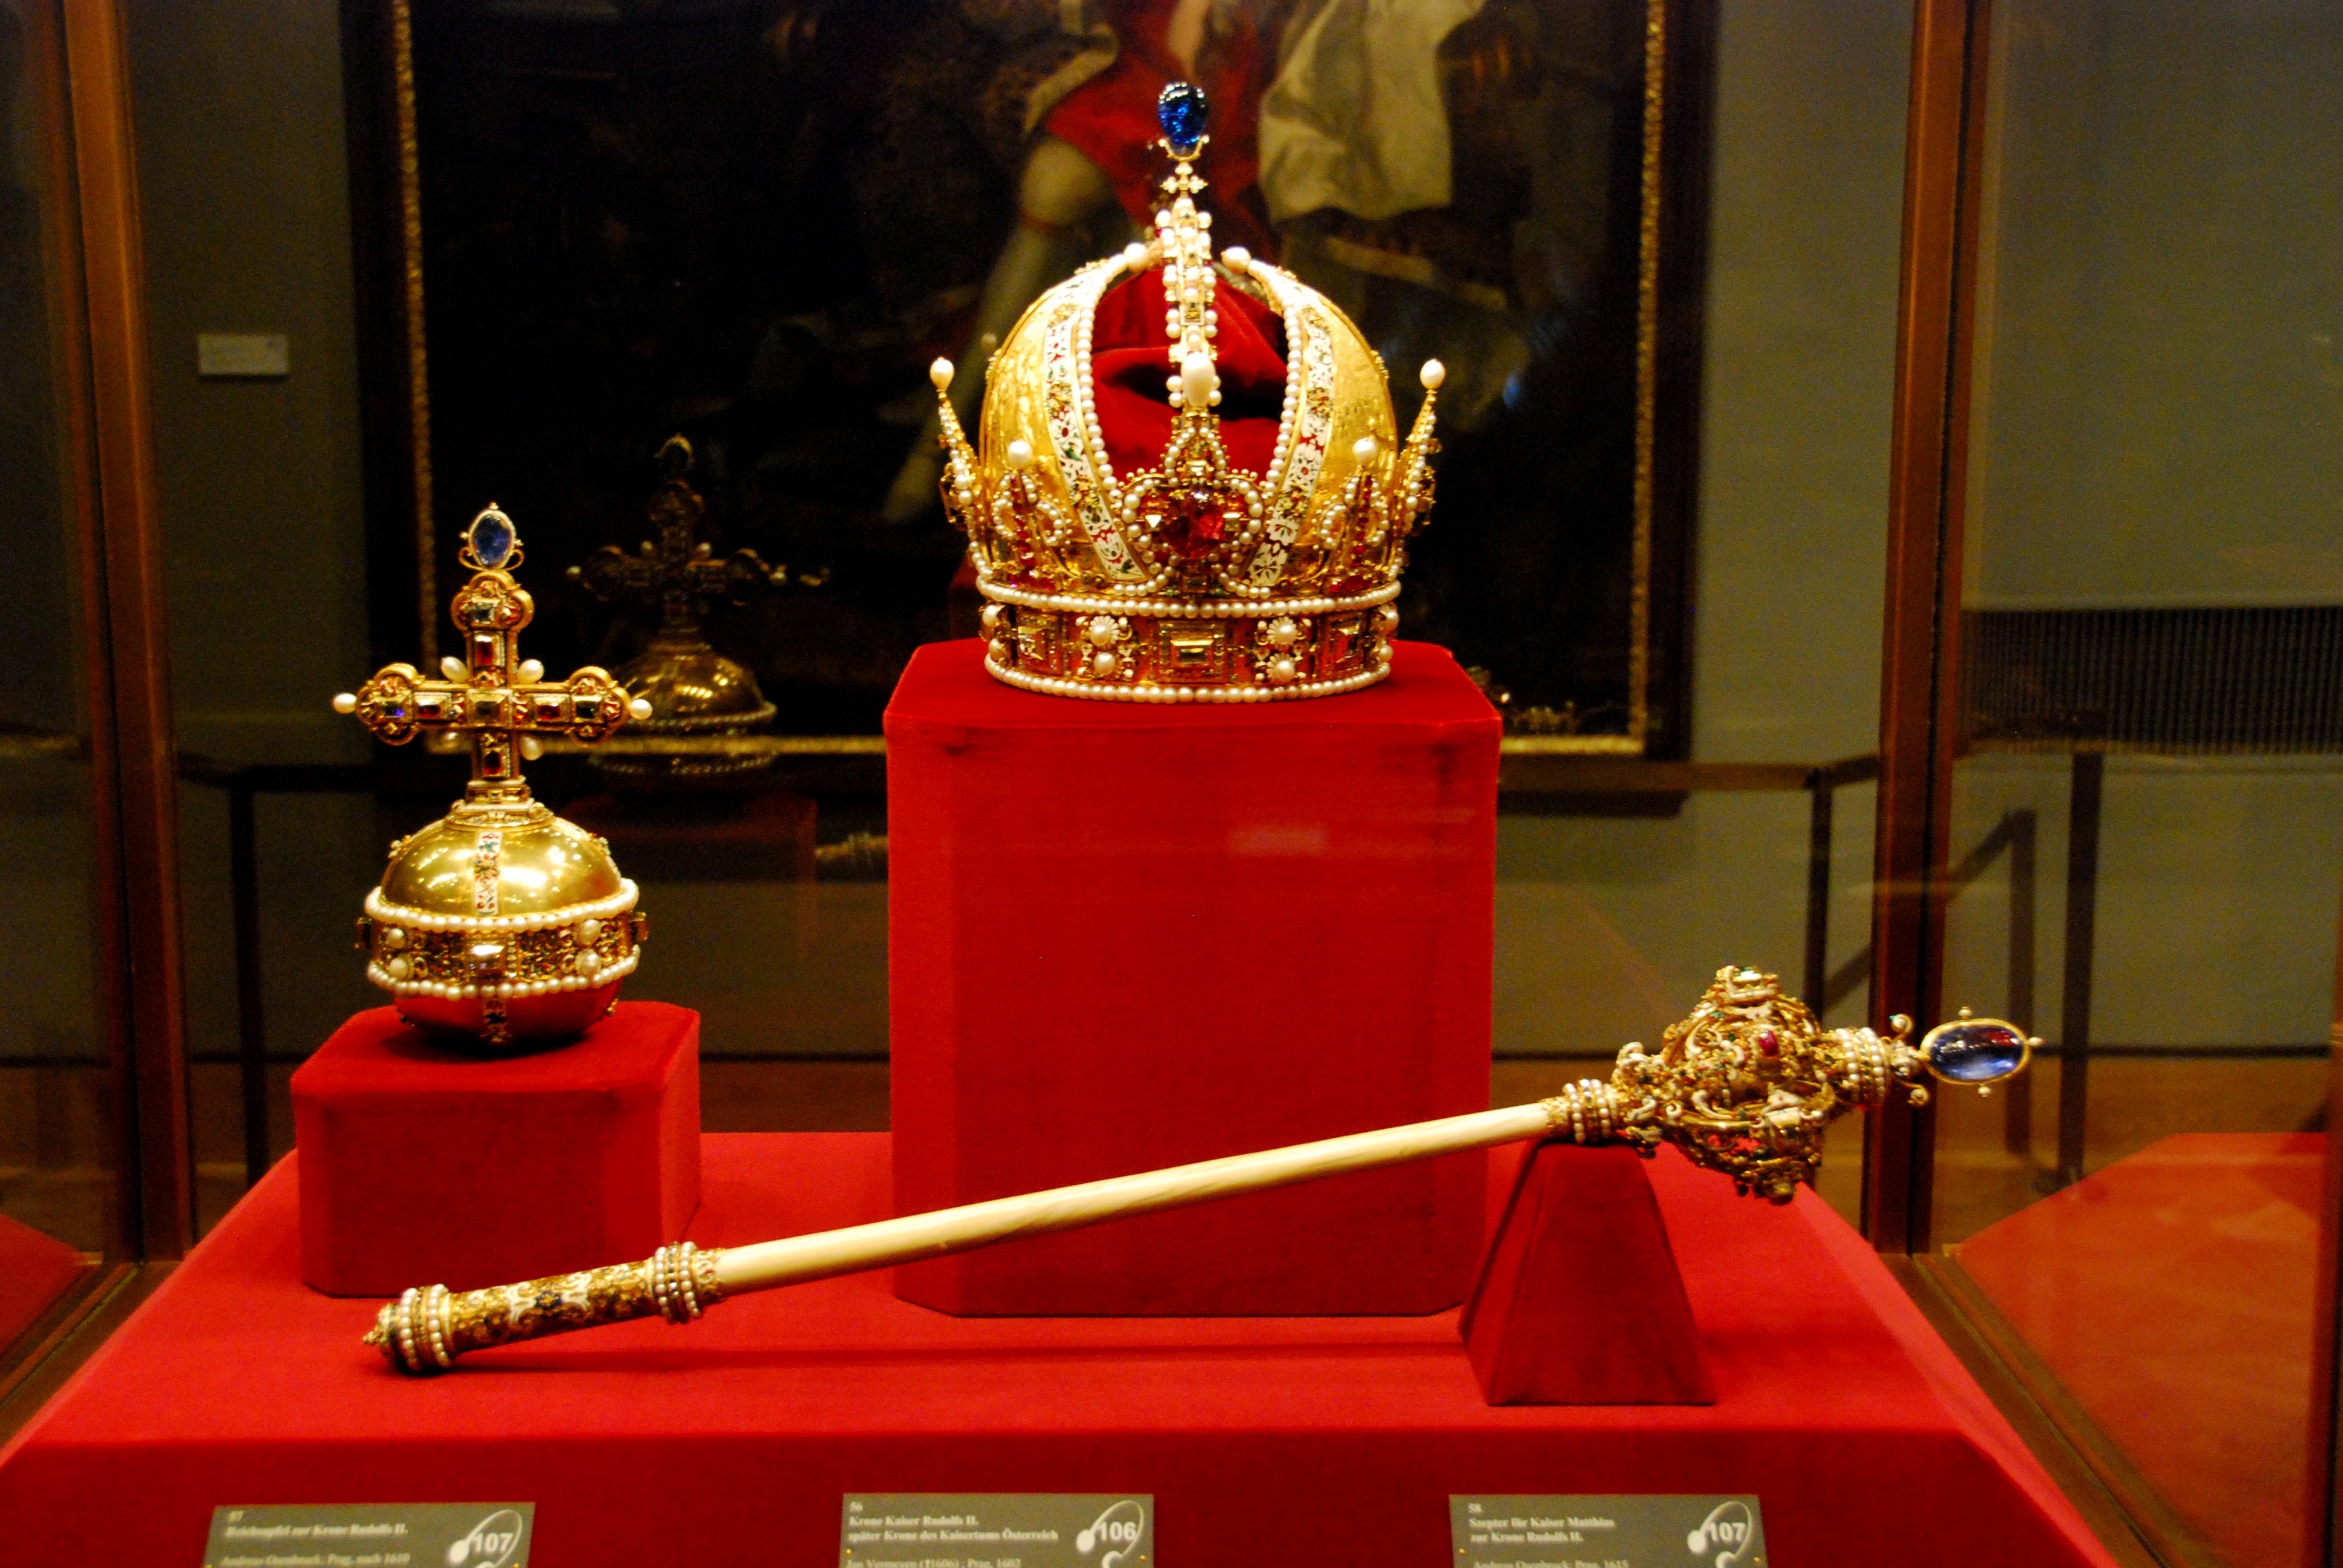 Schatzkammer of the Hofburg: Imperial crown of Austria | Flickr ...